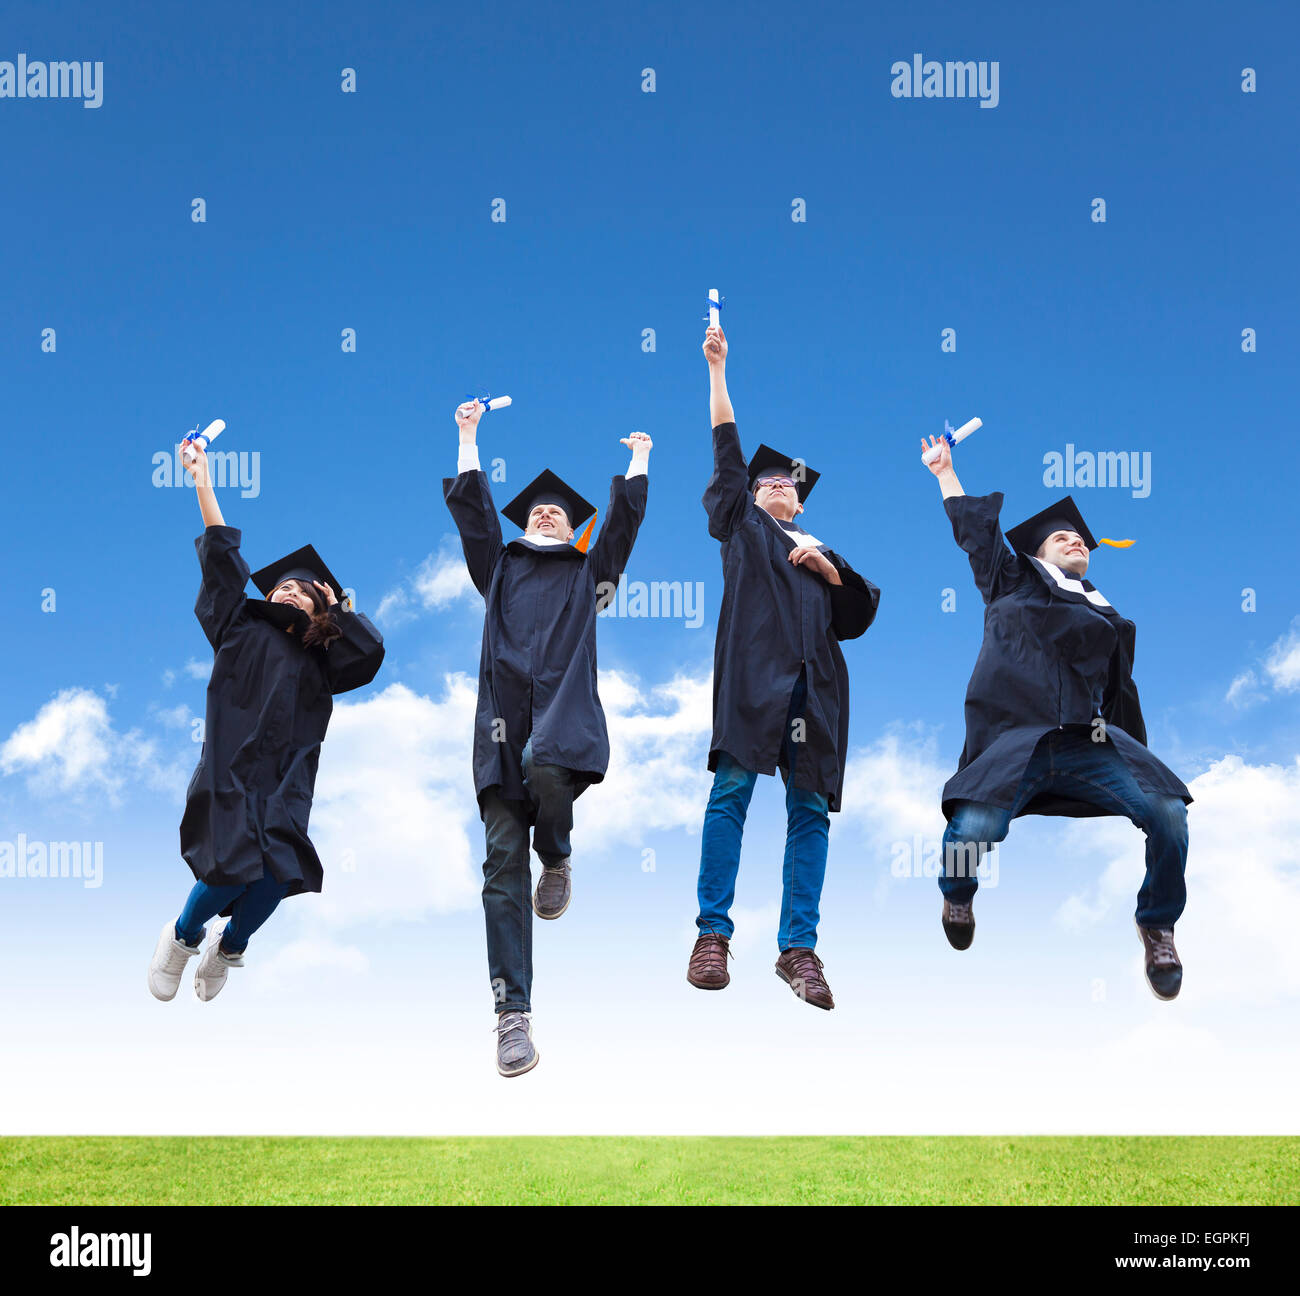 Glückliche junge Gruppe von Abschluss-Schüler springen zusammen Stockfoto